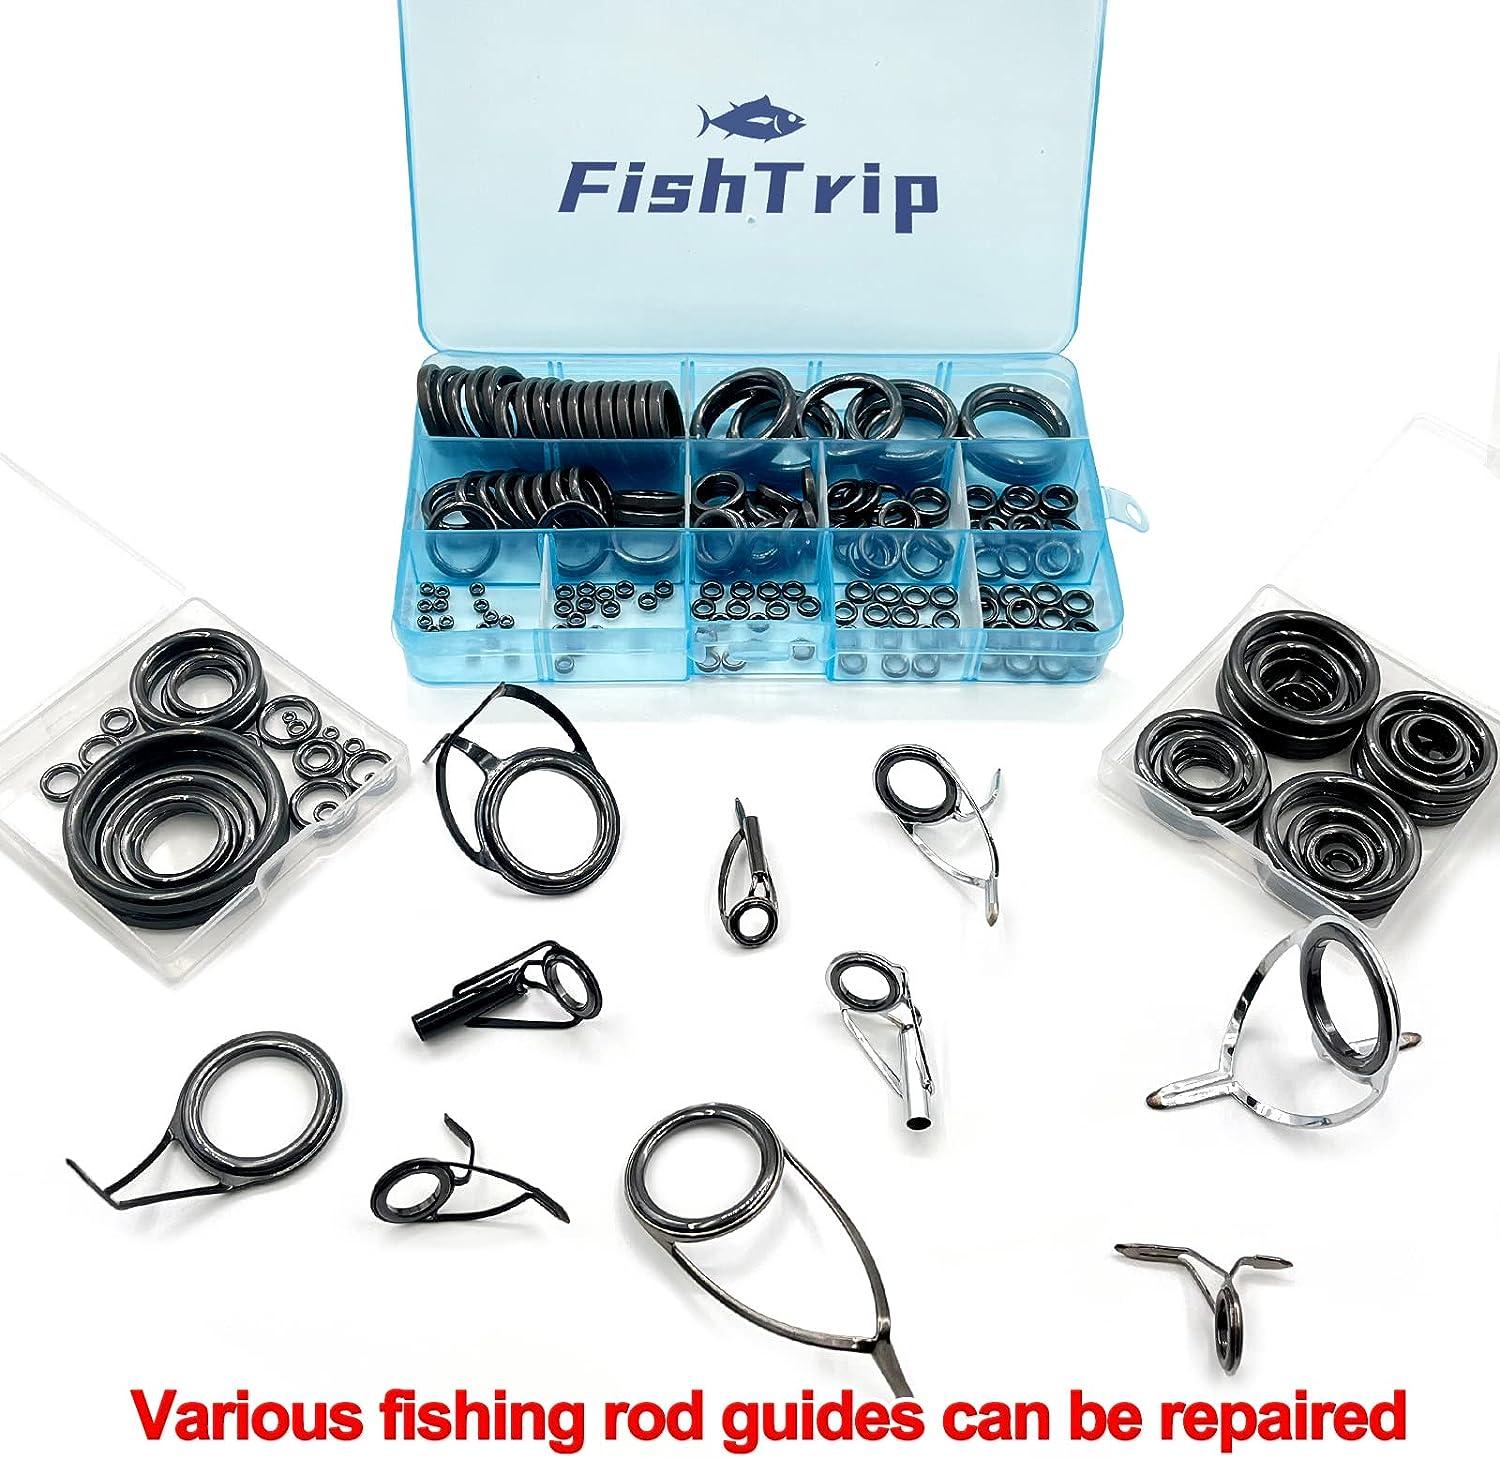  FishTrip Fishing Rod Repair Kit Complete,10pcs Carbon